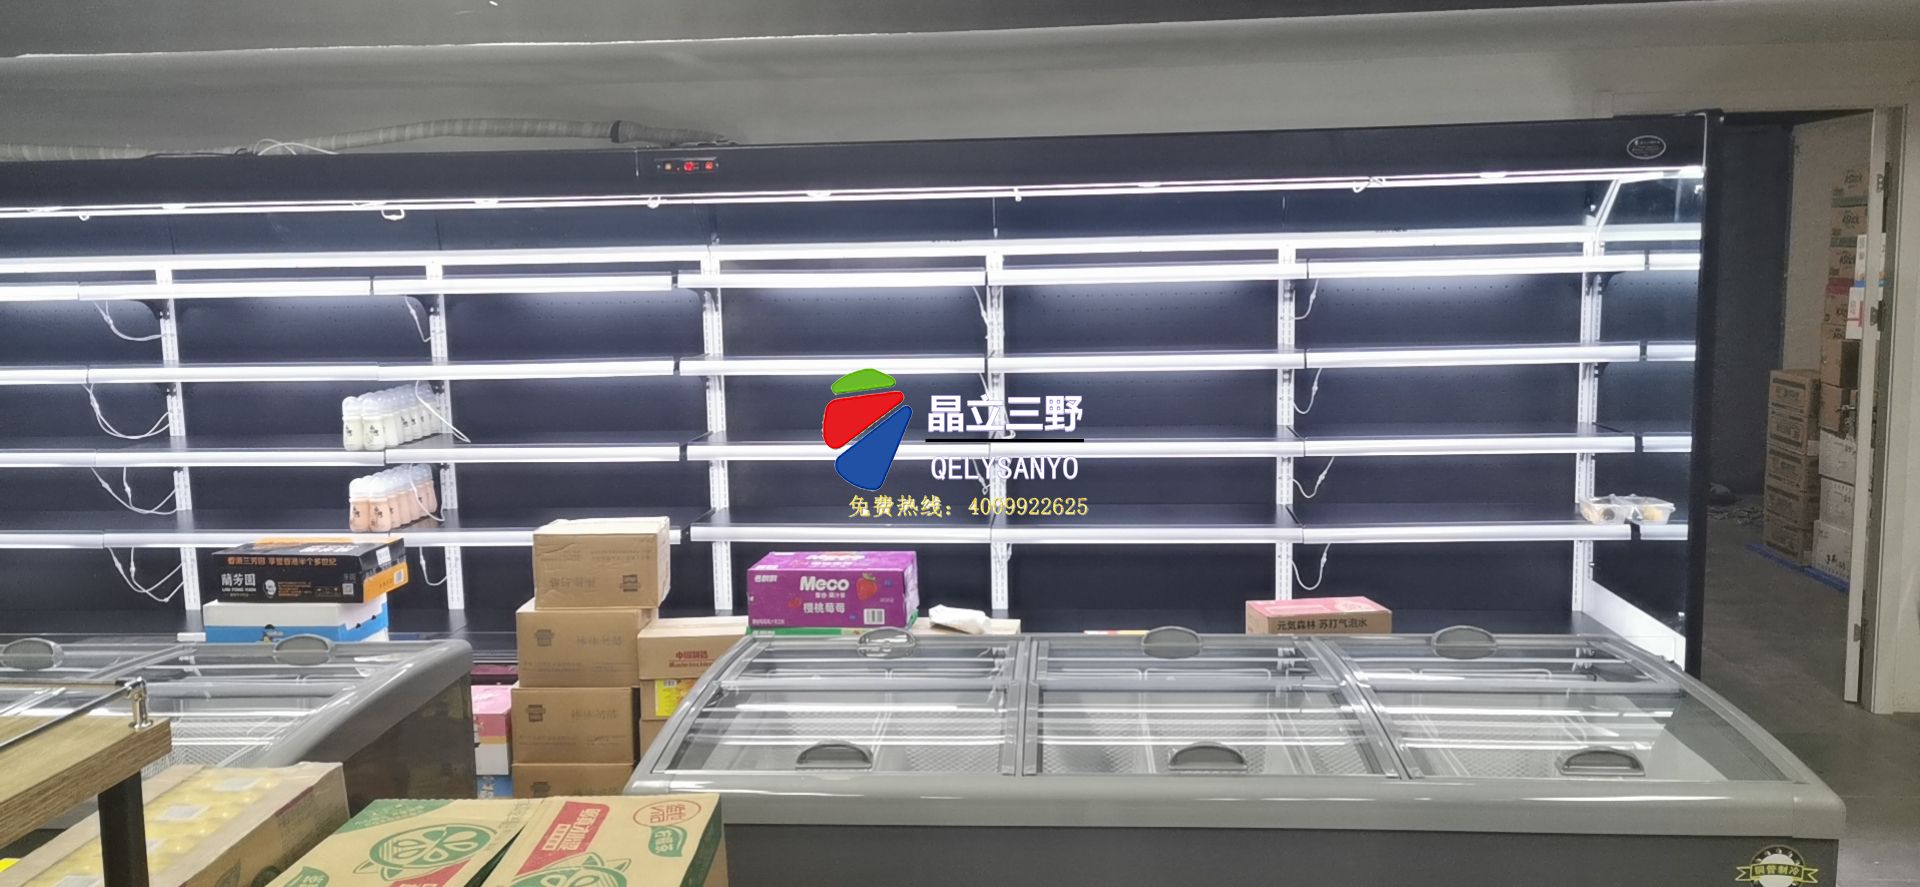 苏州七功夫精品超市